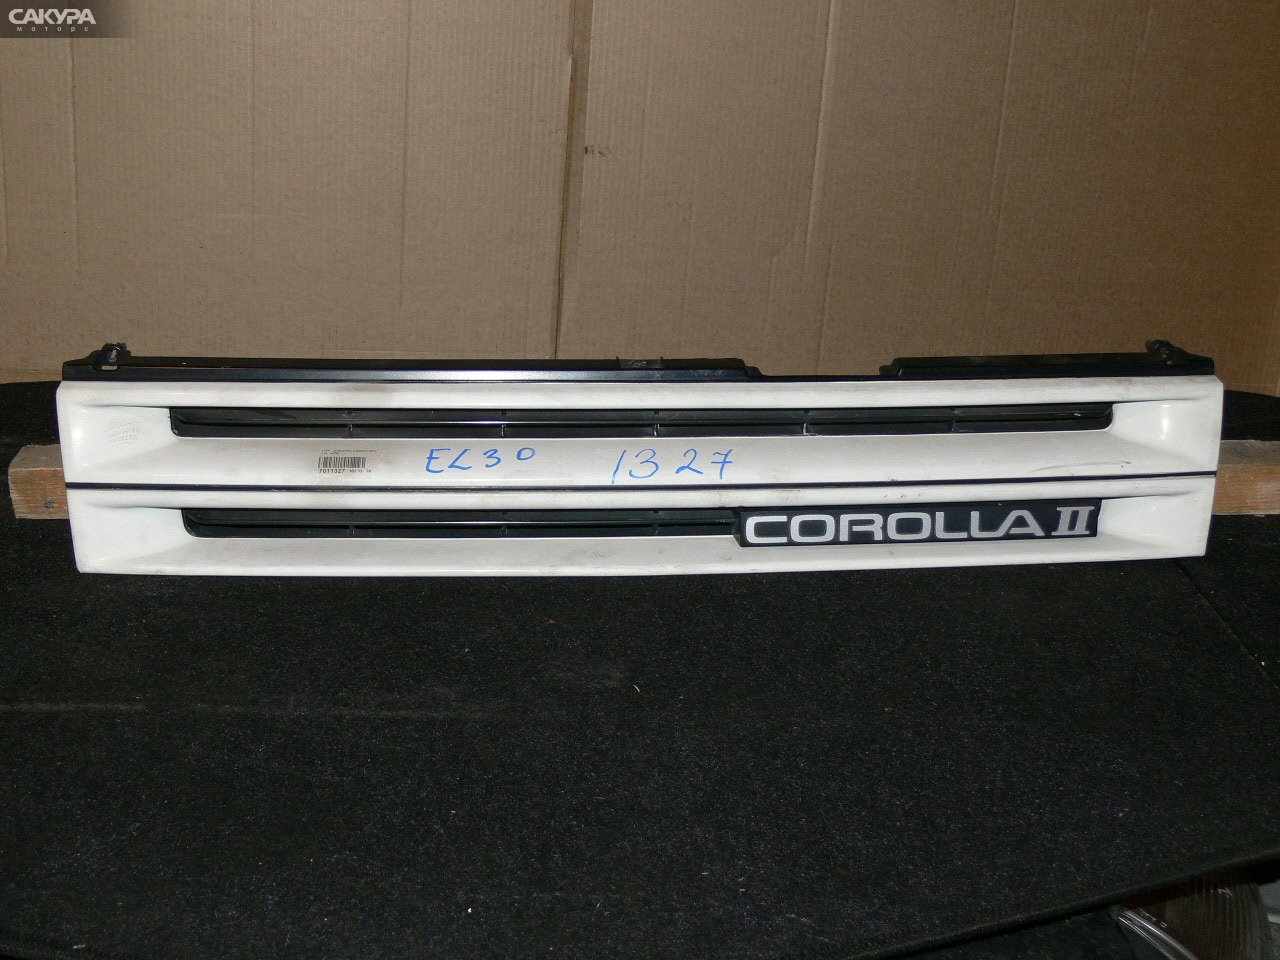 Решетка радиатора Toyota Corolla II EL30: купить в Сакура Иркутск.